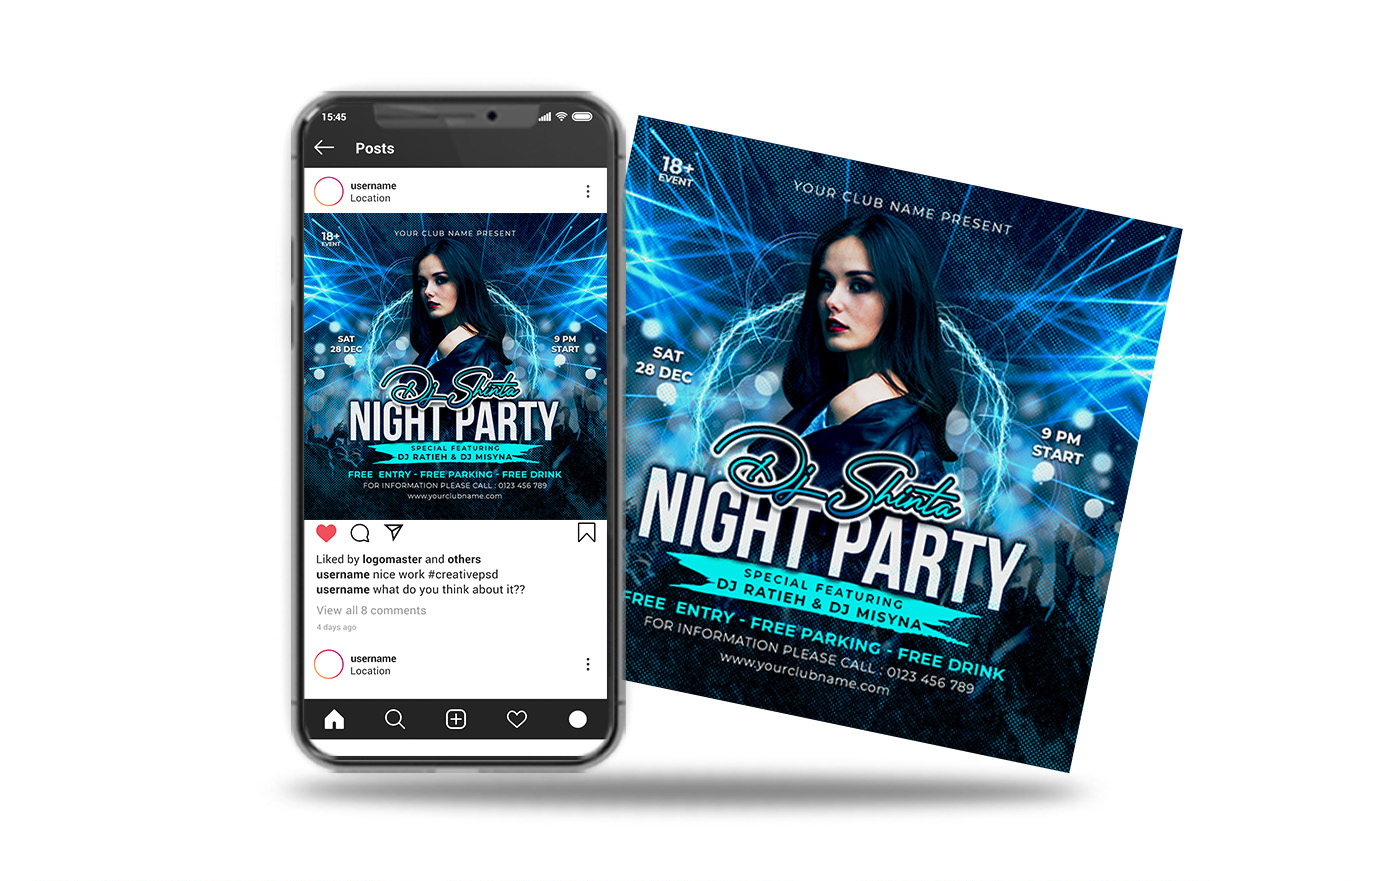 night party dj flyer social media post